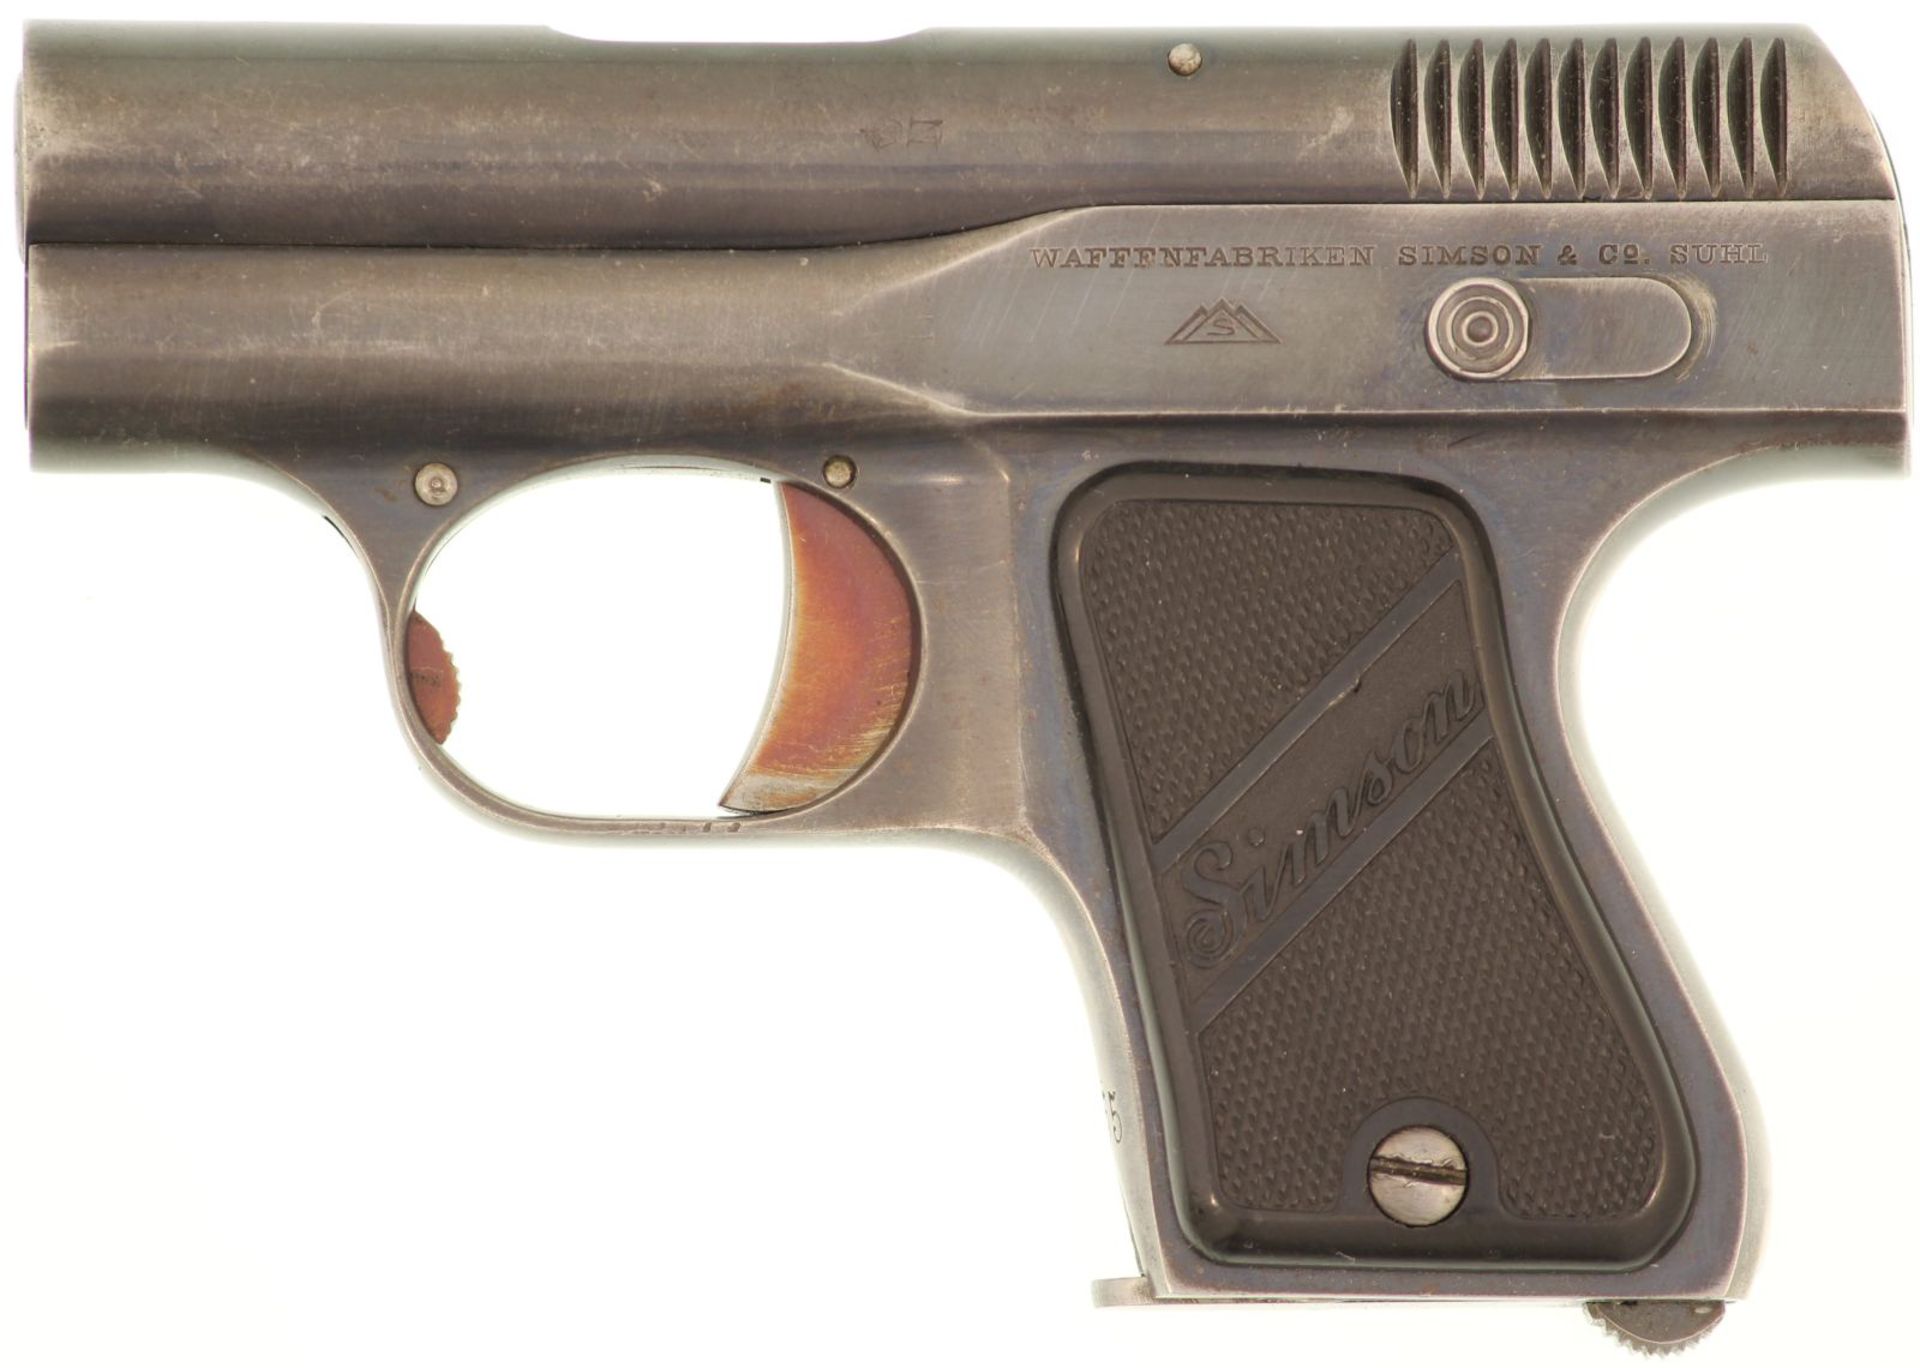 Taschenpistole, Simson Kal. 6.35 mm. Hergestellt von Waffenfabriken Simson & Co., Suhl. Schwarze